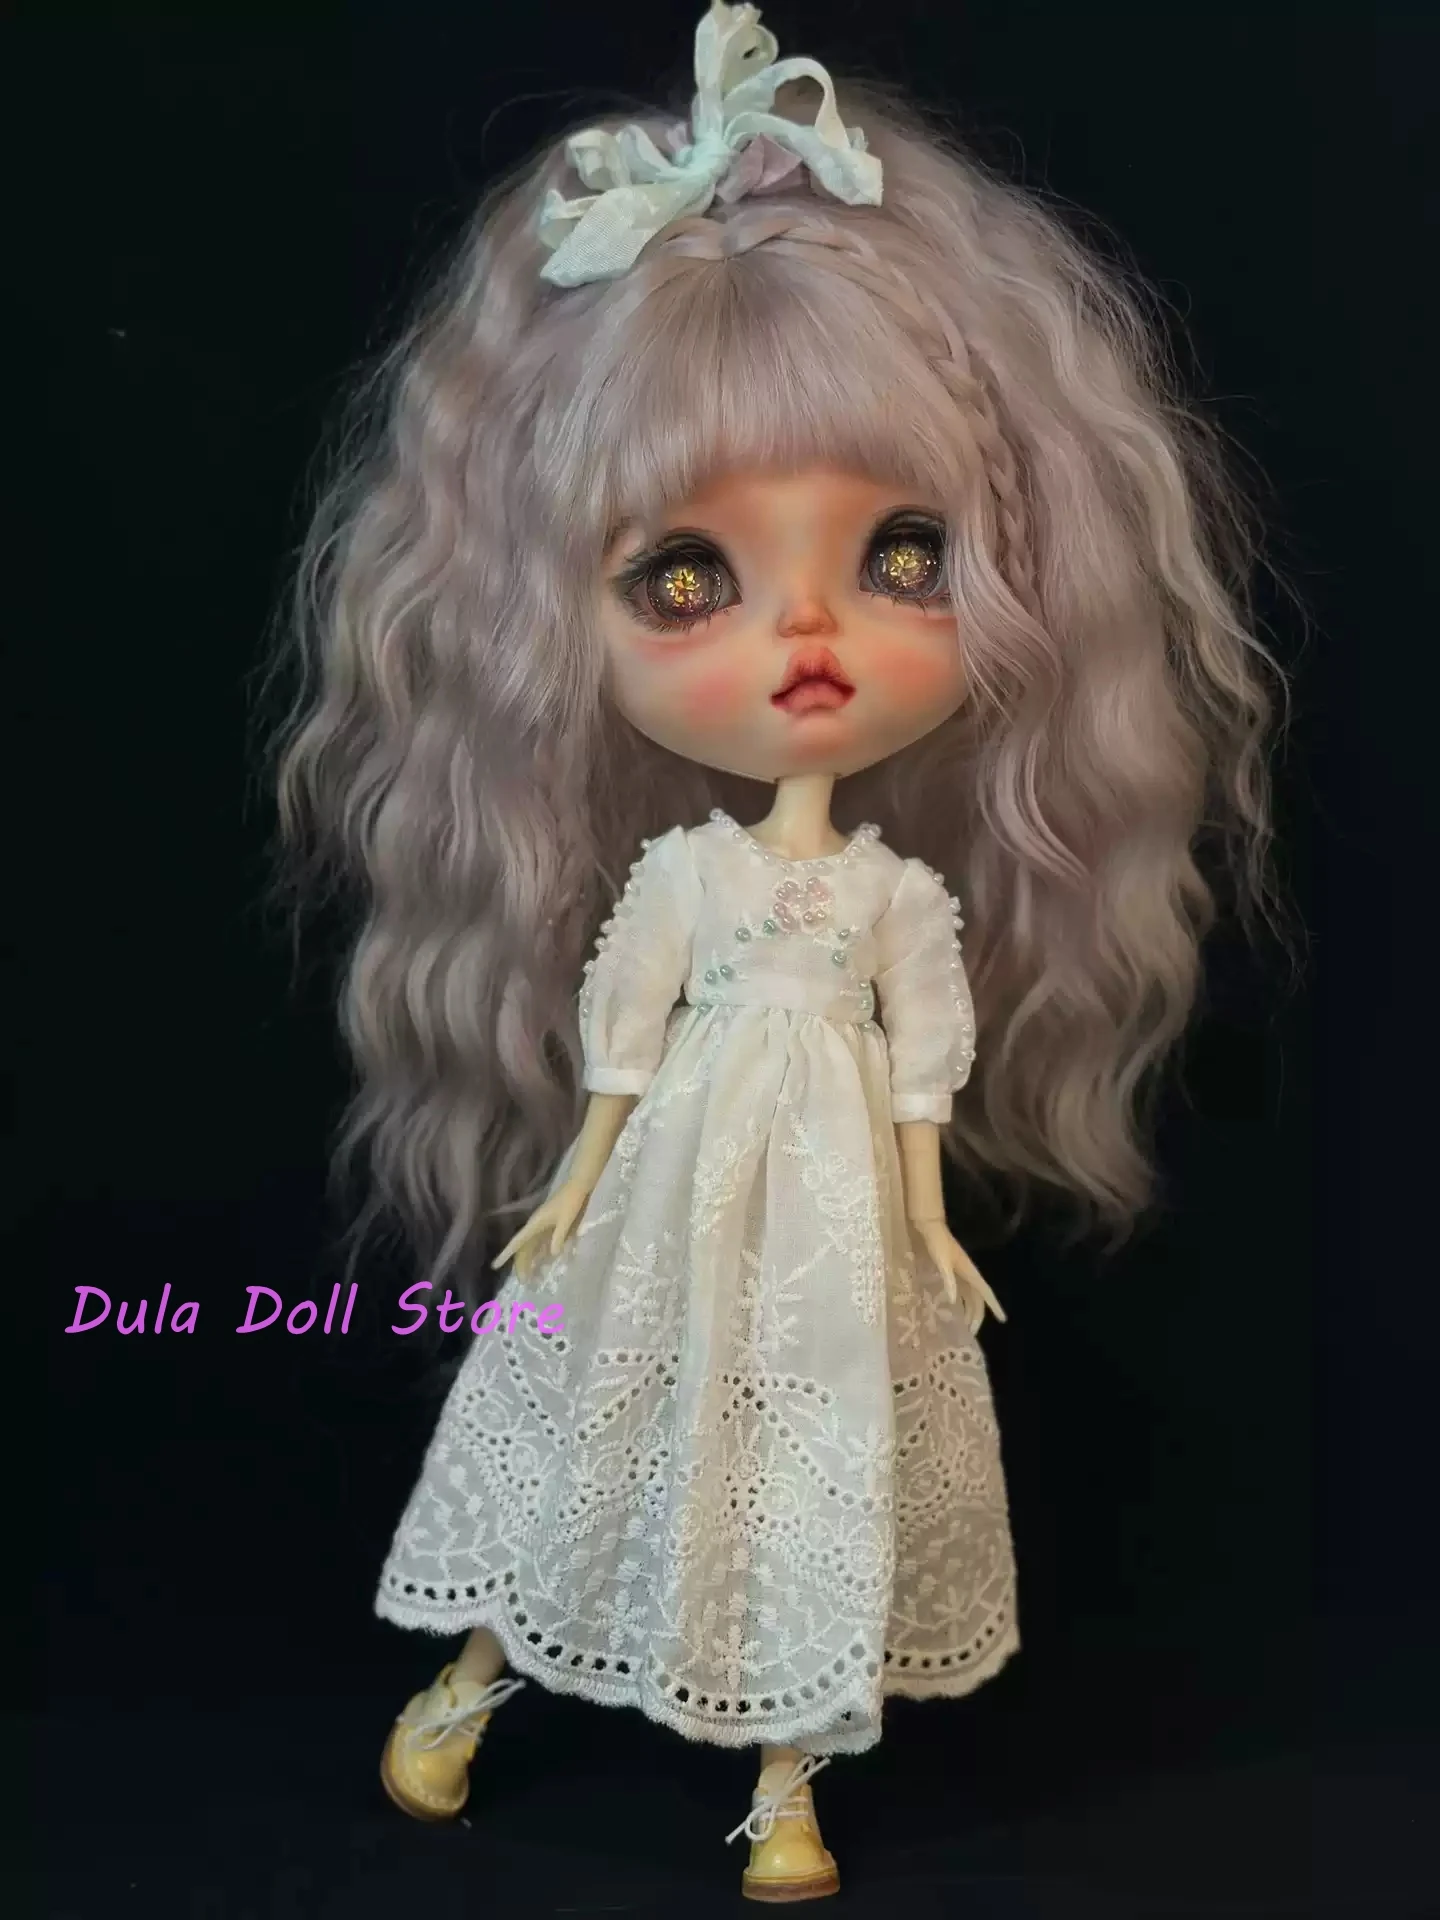 

Одежда для куклы Dula платье вышитая юбка с вырезами Blythe ob24 ob22 Azone Licca ICY jerfish 1/6 аксессуары для кукол Bjd